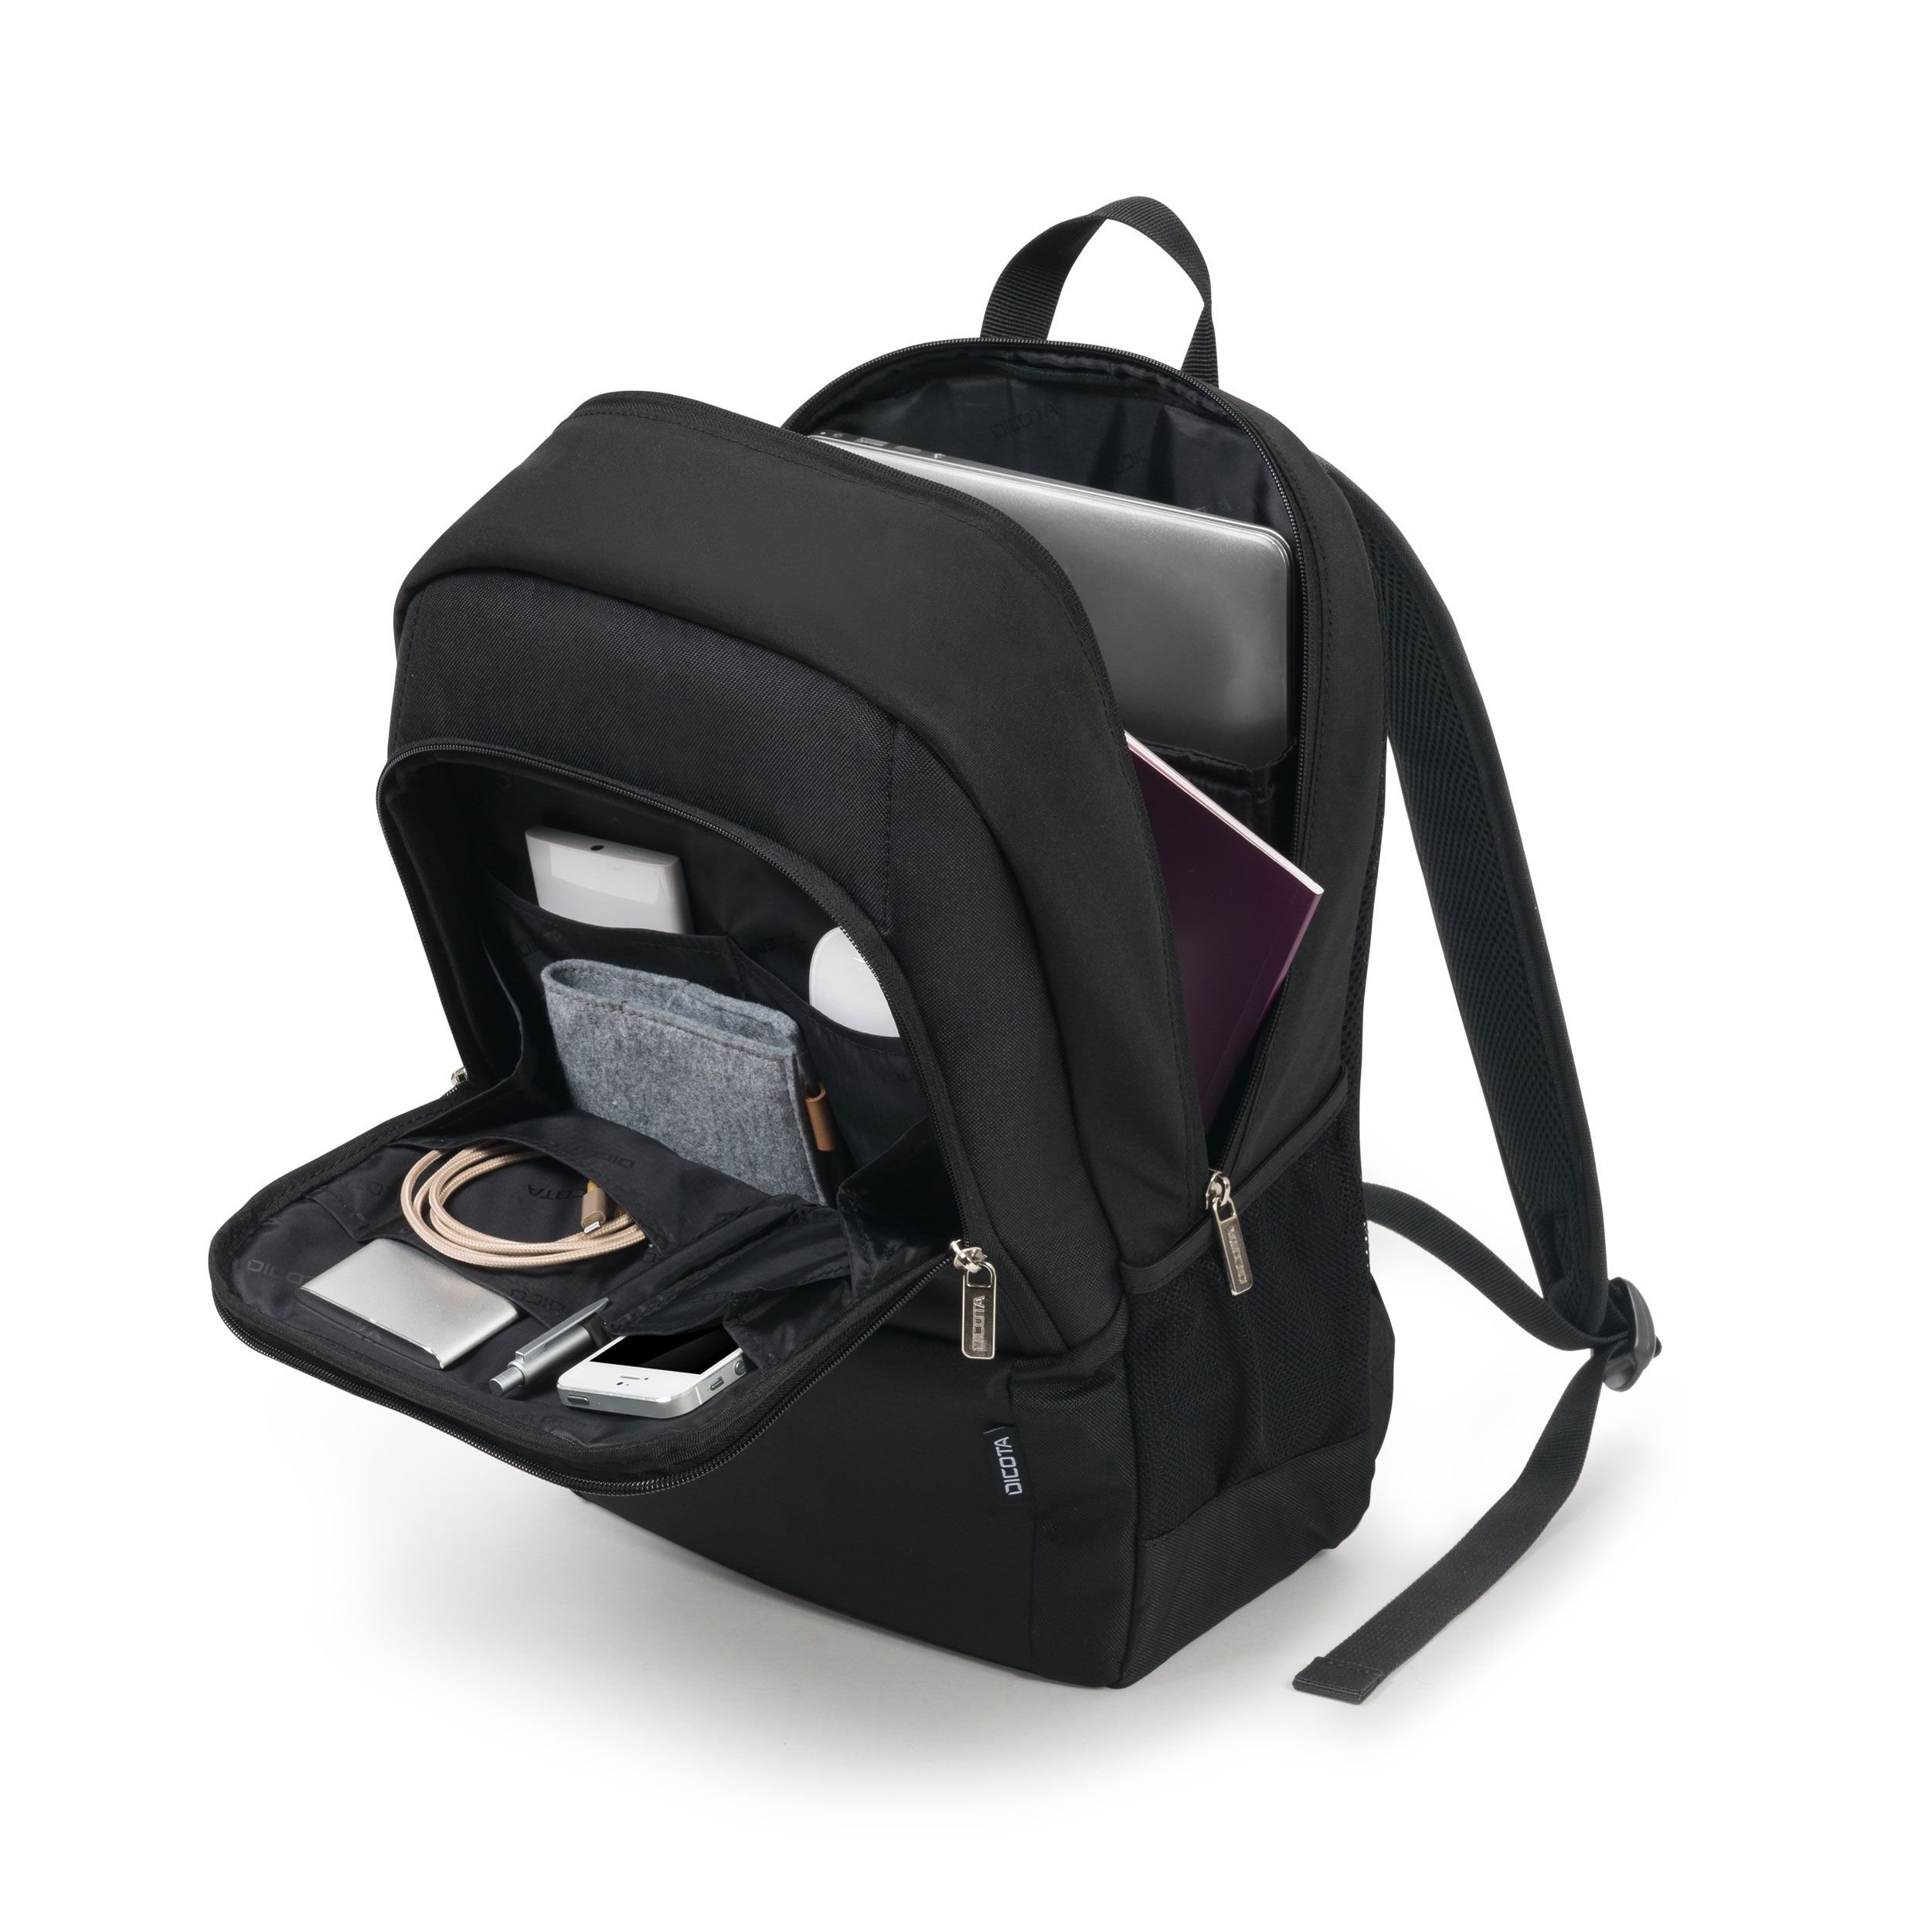 Plecak Dicota Backpack BASE czarny widok od prawego boku na przód z uchyloną komorą główną i przedstawionym wnętrzem